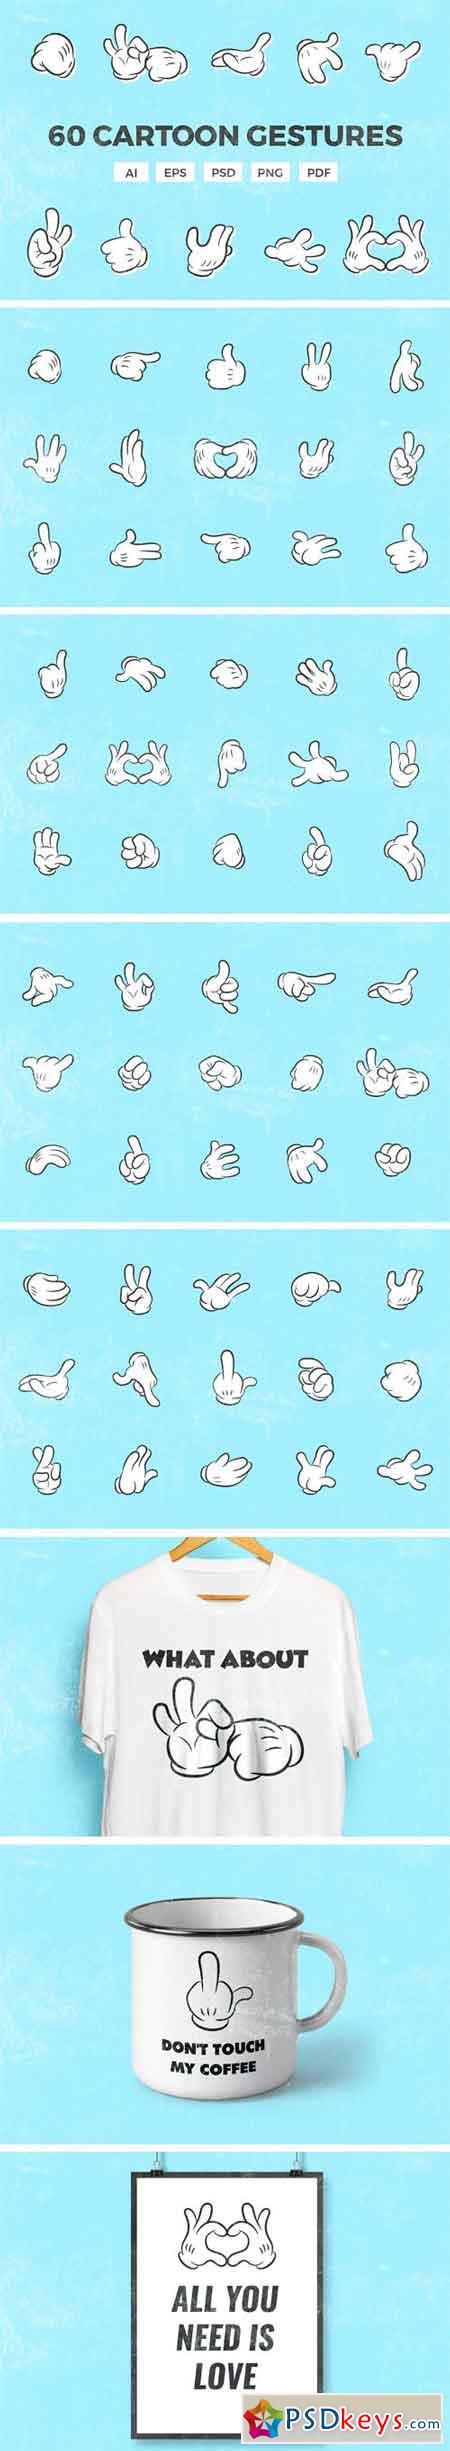 60 Cartoon Gestures 2115079